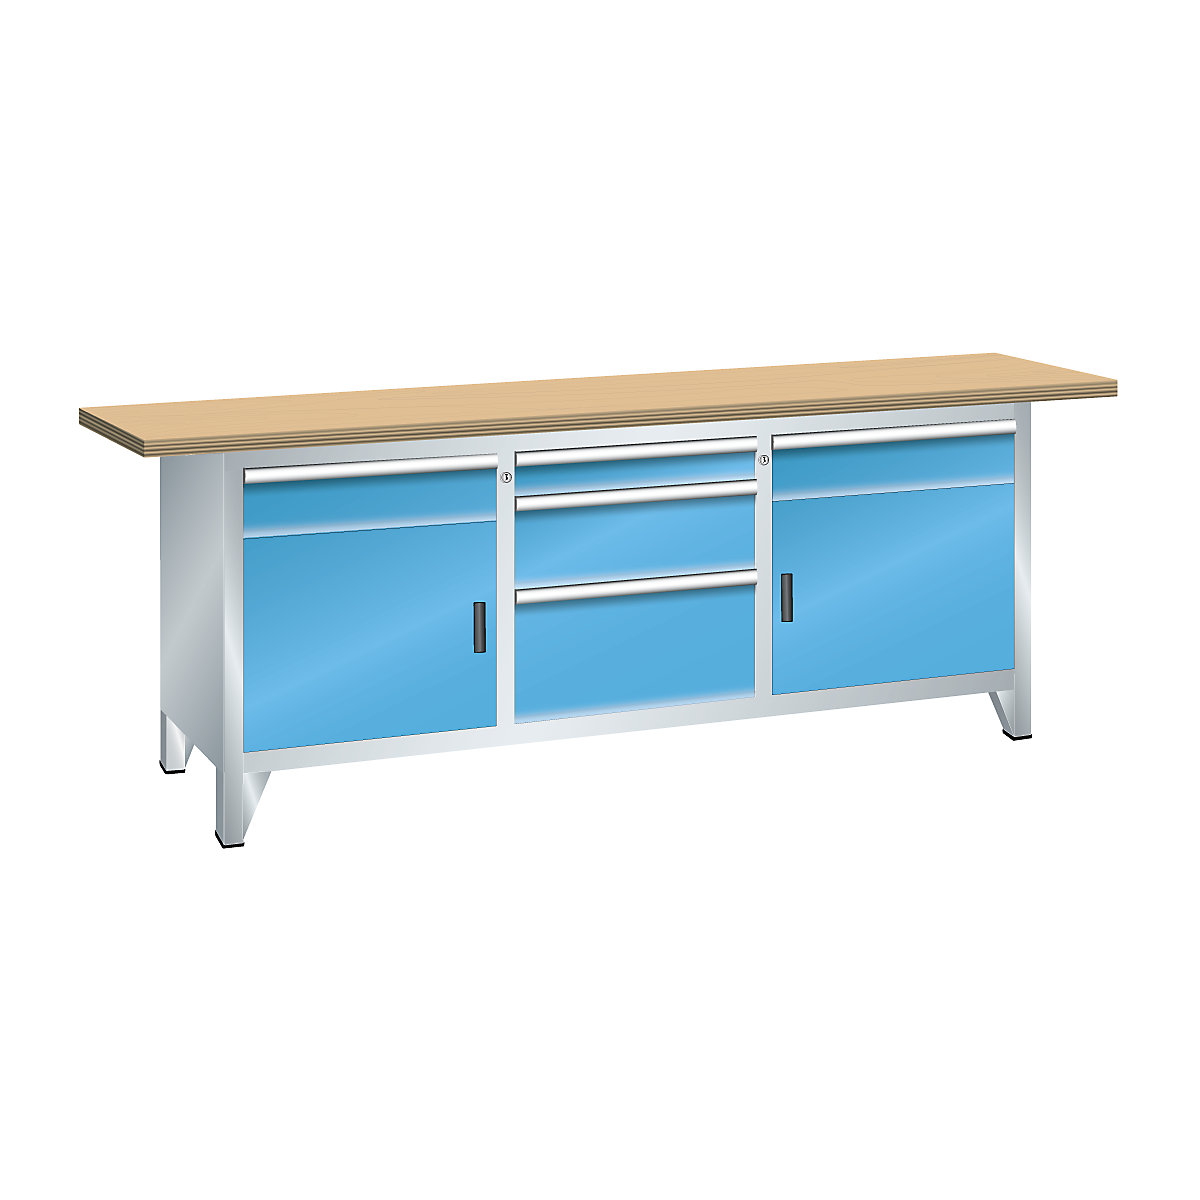 Workbench width 2000 mm, frame construction – LISTA, 5 drawers, 2 doors, 2 shelves, body light grey, front light blue-2